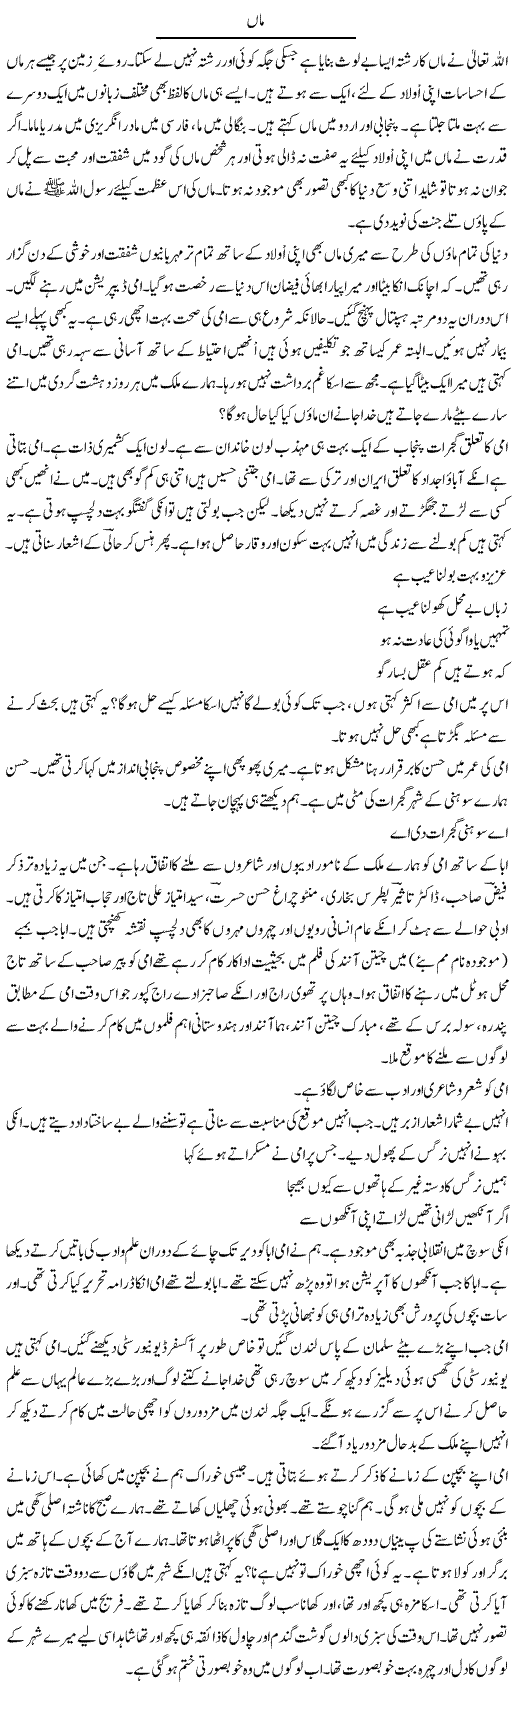 Maa | Tasneem Peer Zada | Daily Urdu Columns